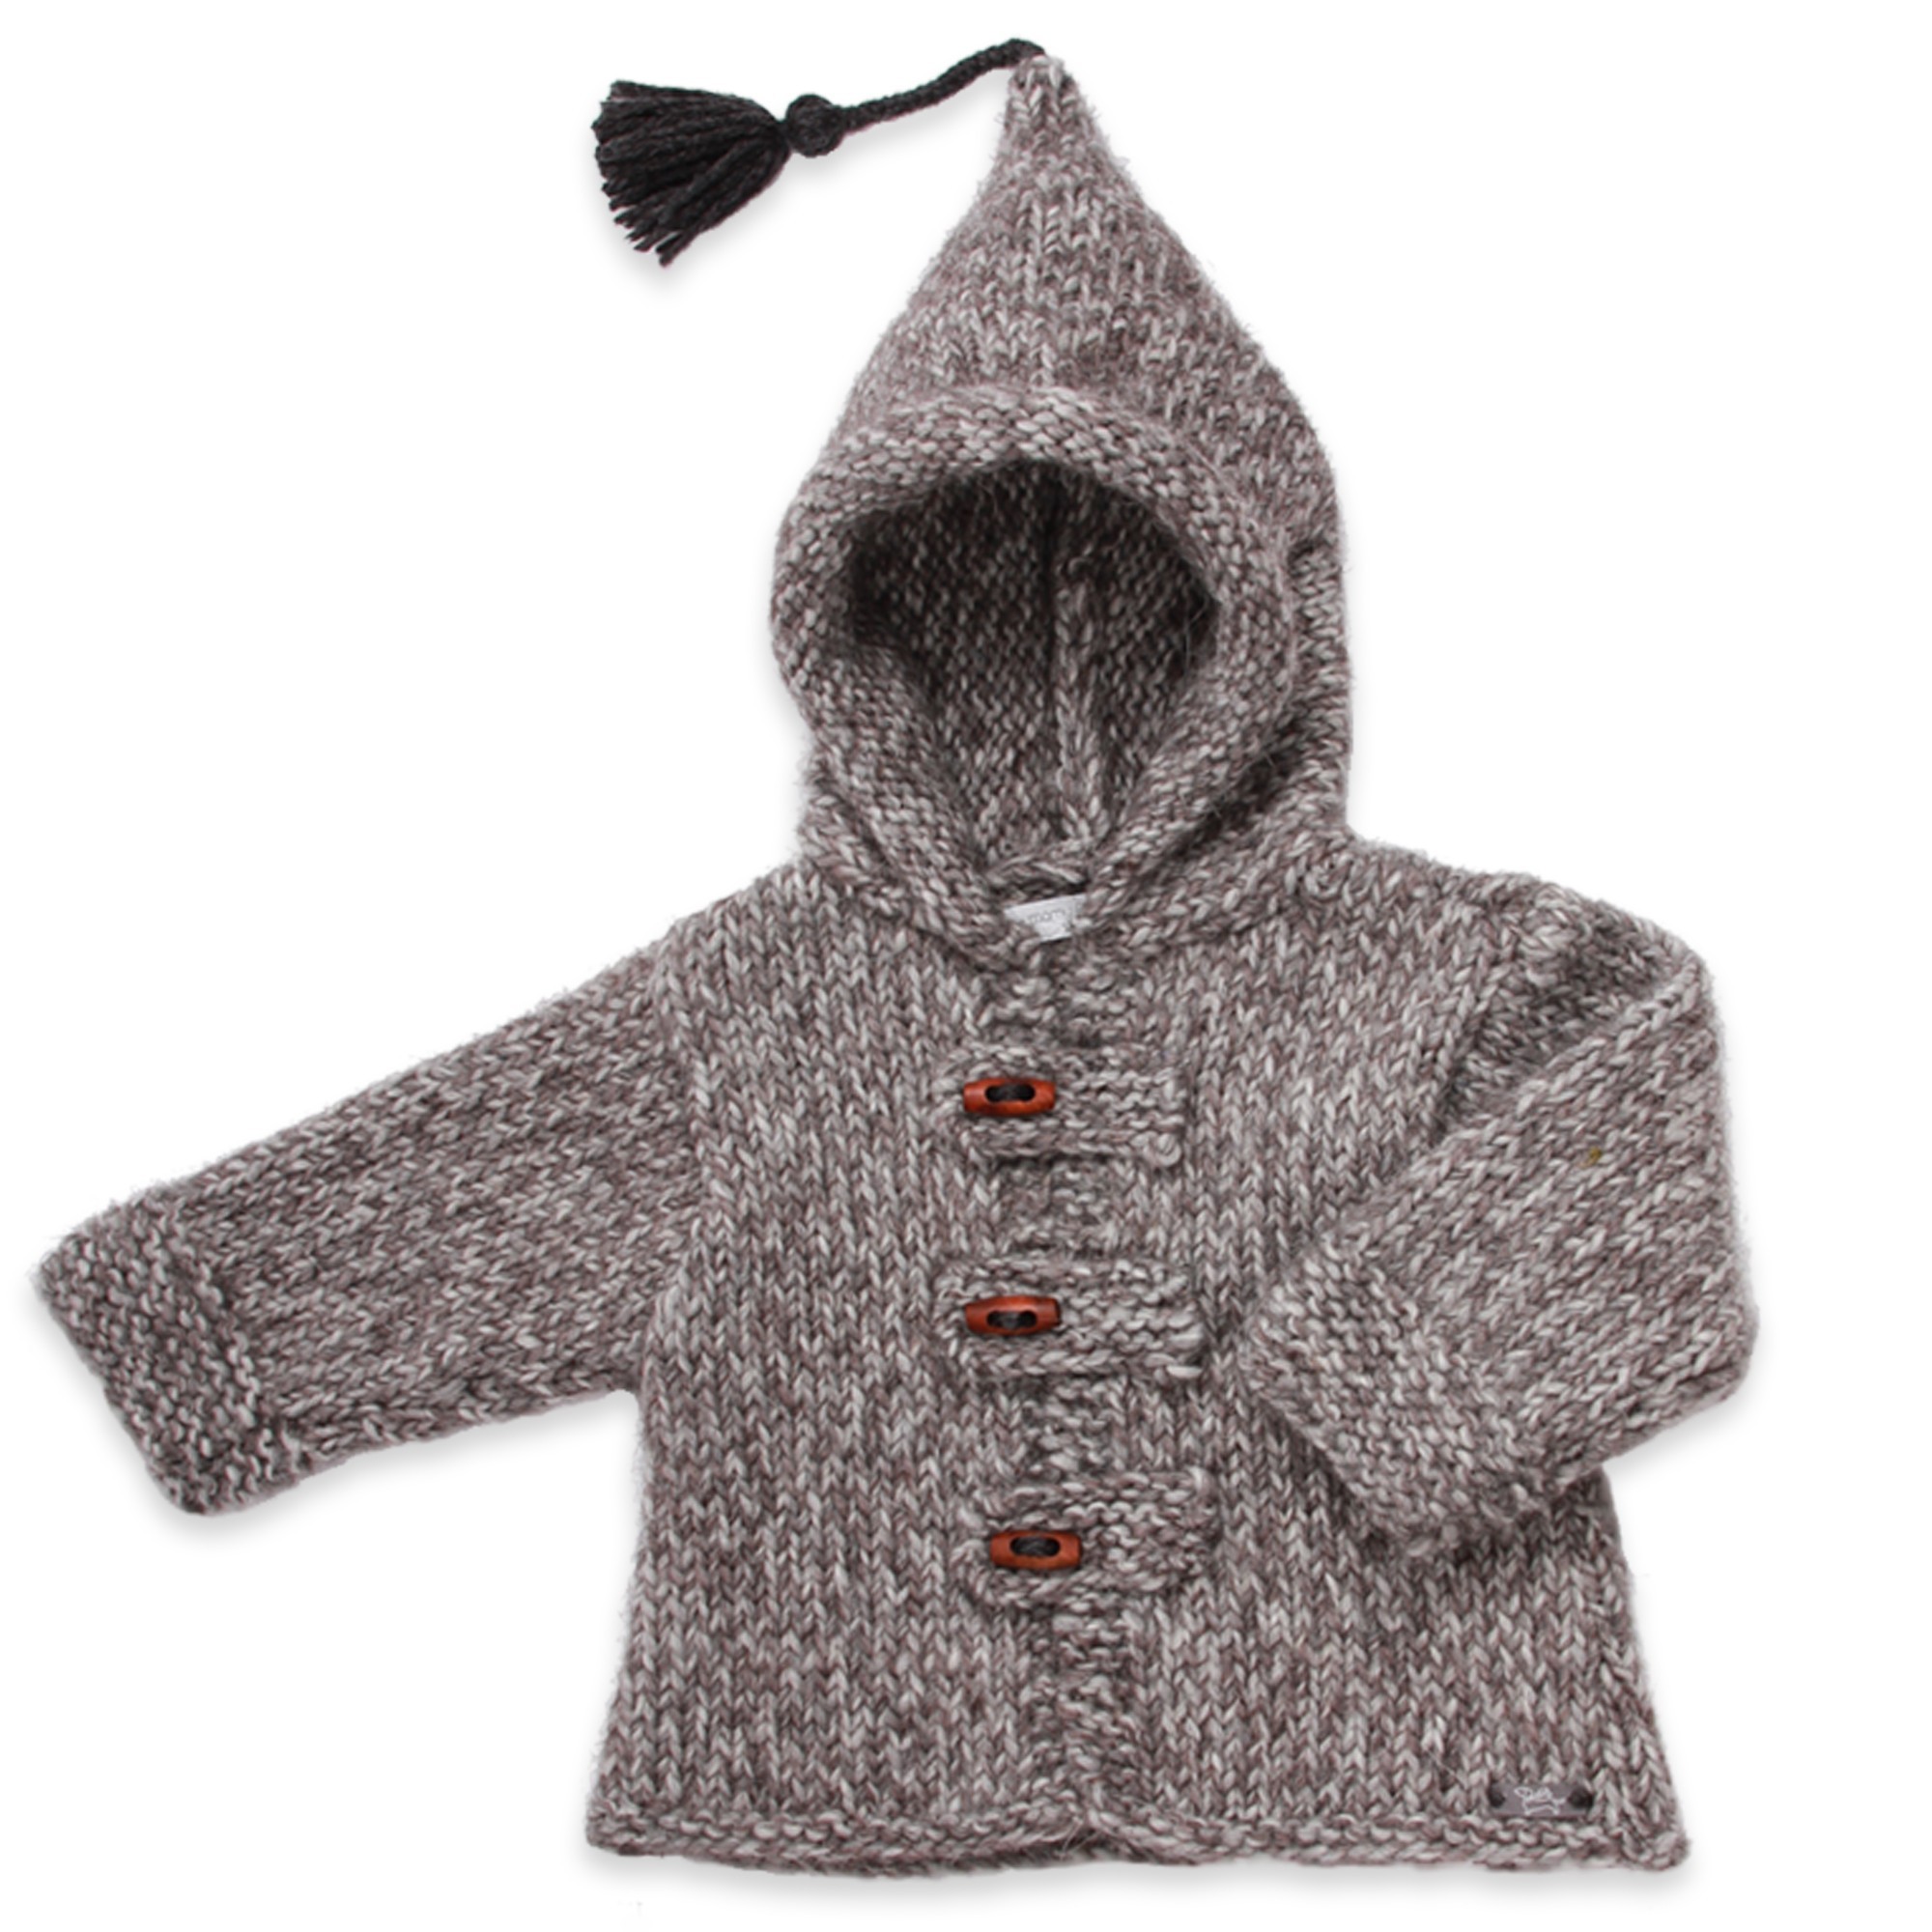 comment tricoter une veste a capuche pour bebe